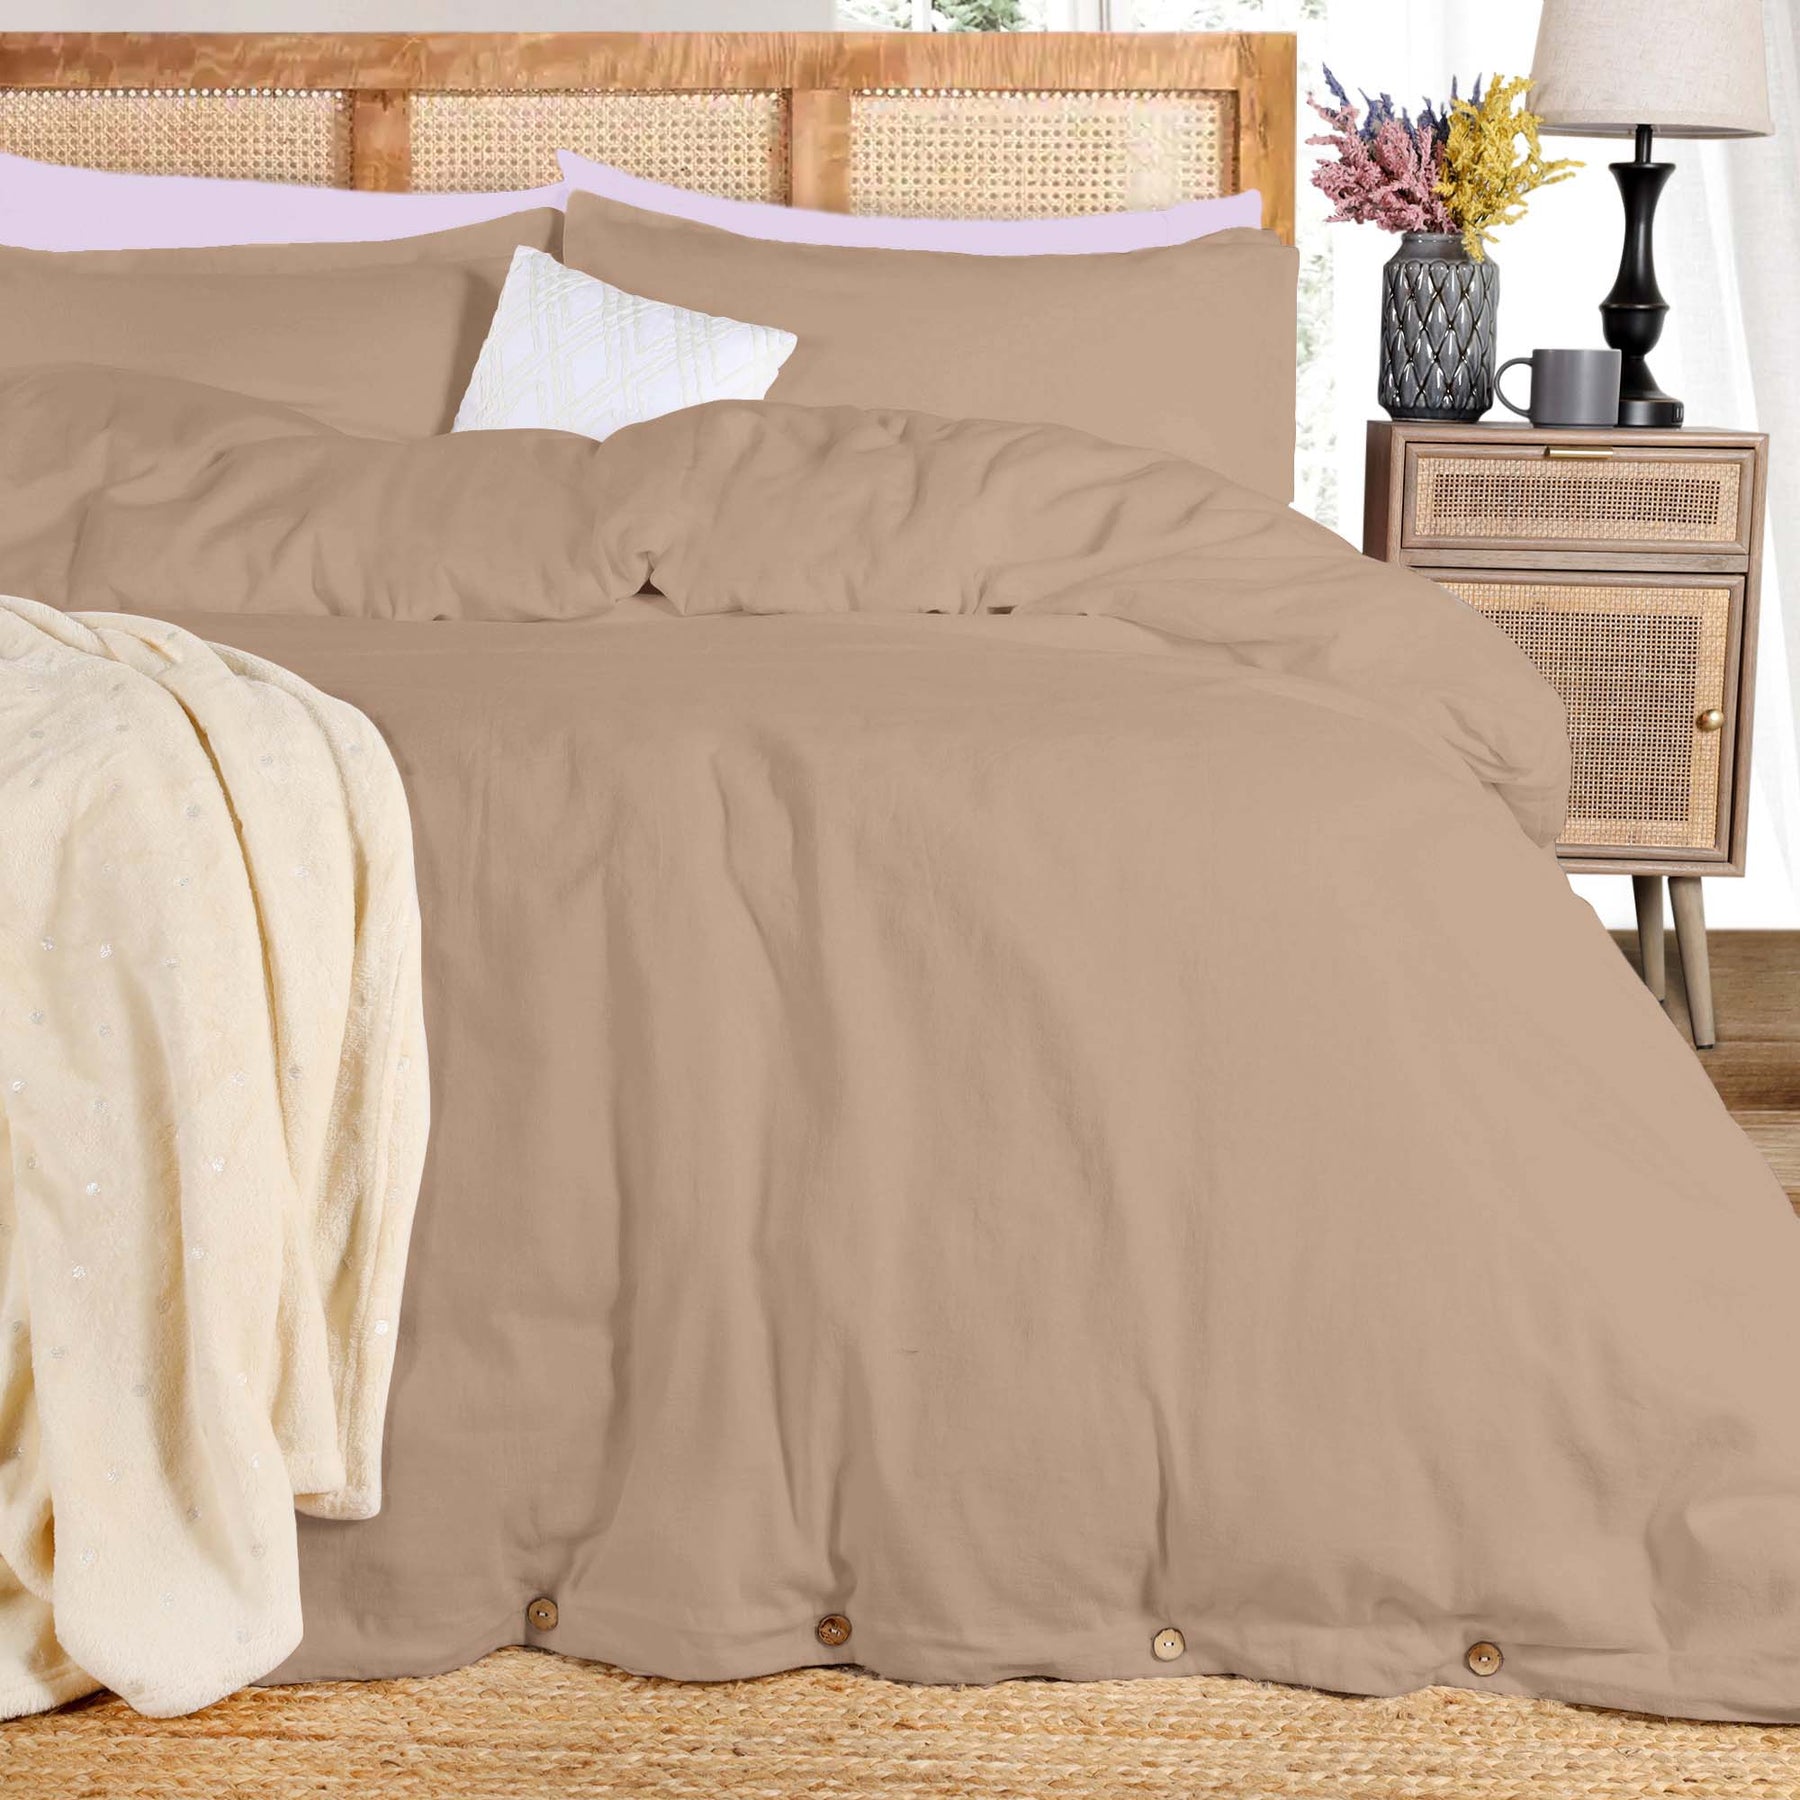 Superior Cotton Linen Blend Solid 3 Piece Duvet Cover Set - Tan